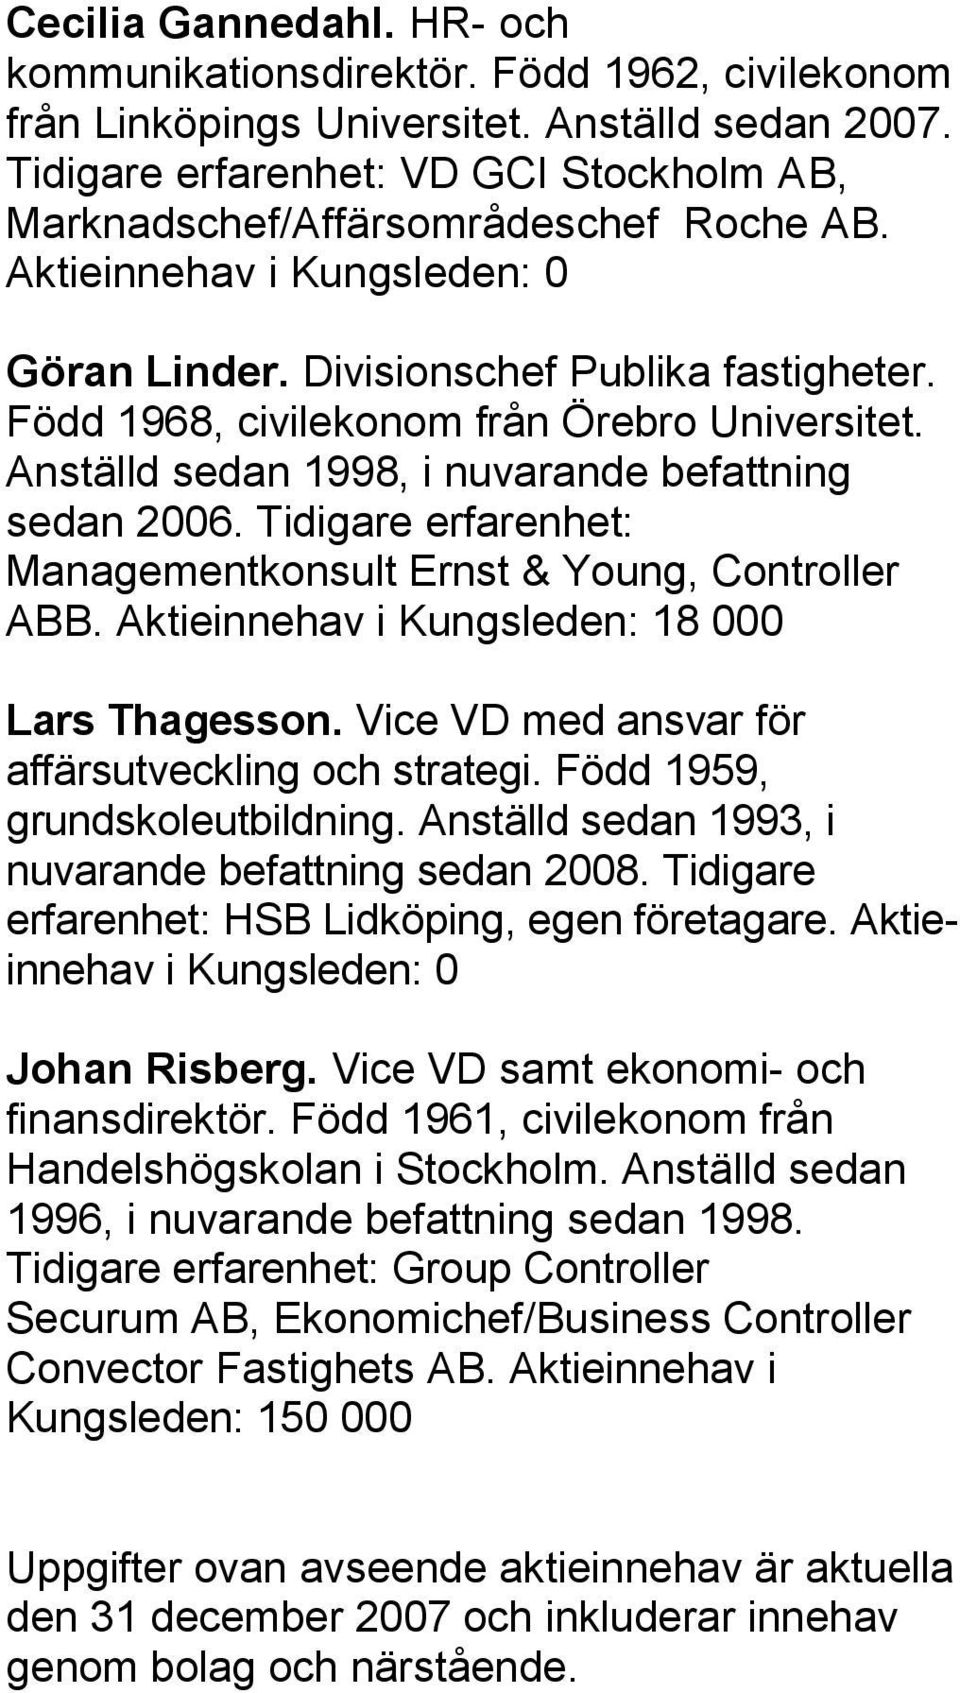 Född 1968, civilekonom från Örebro Universitet. Anställd sedan 1998, i nuvarande befattning sedan 2006. Tidigare erfarenhet: Managementkonsult Ernst & Young, Controller ABB.